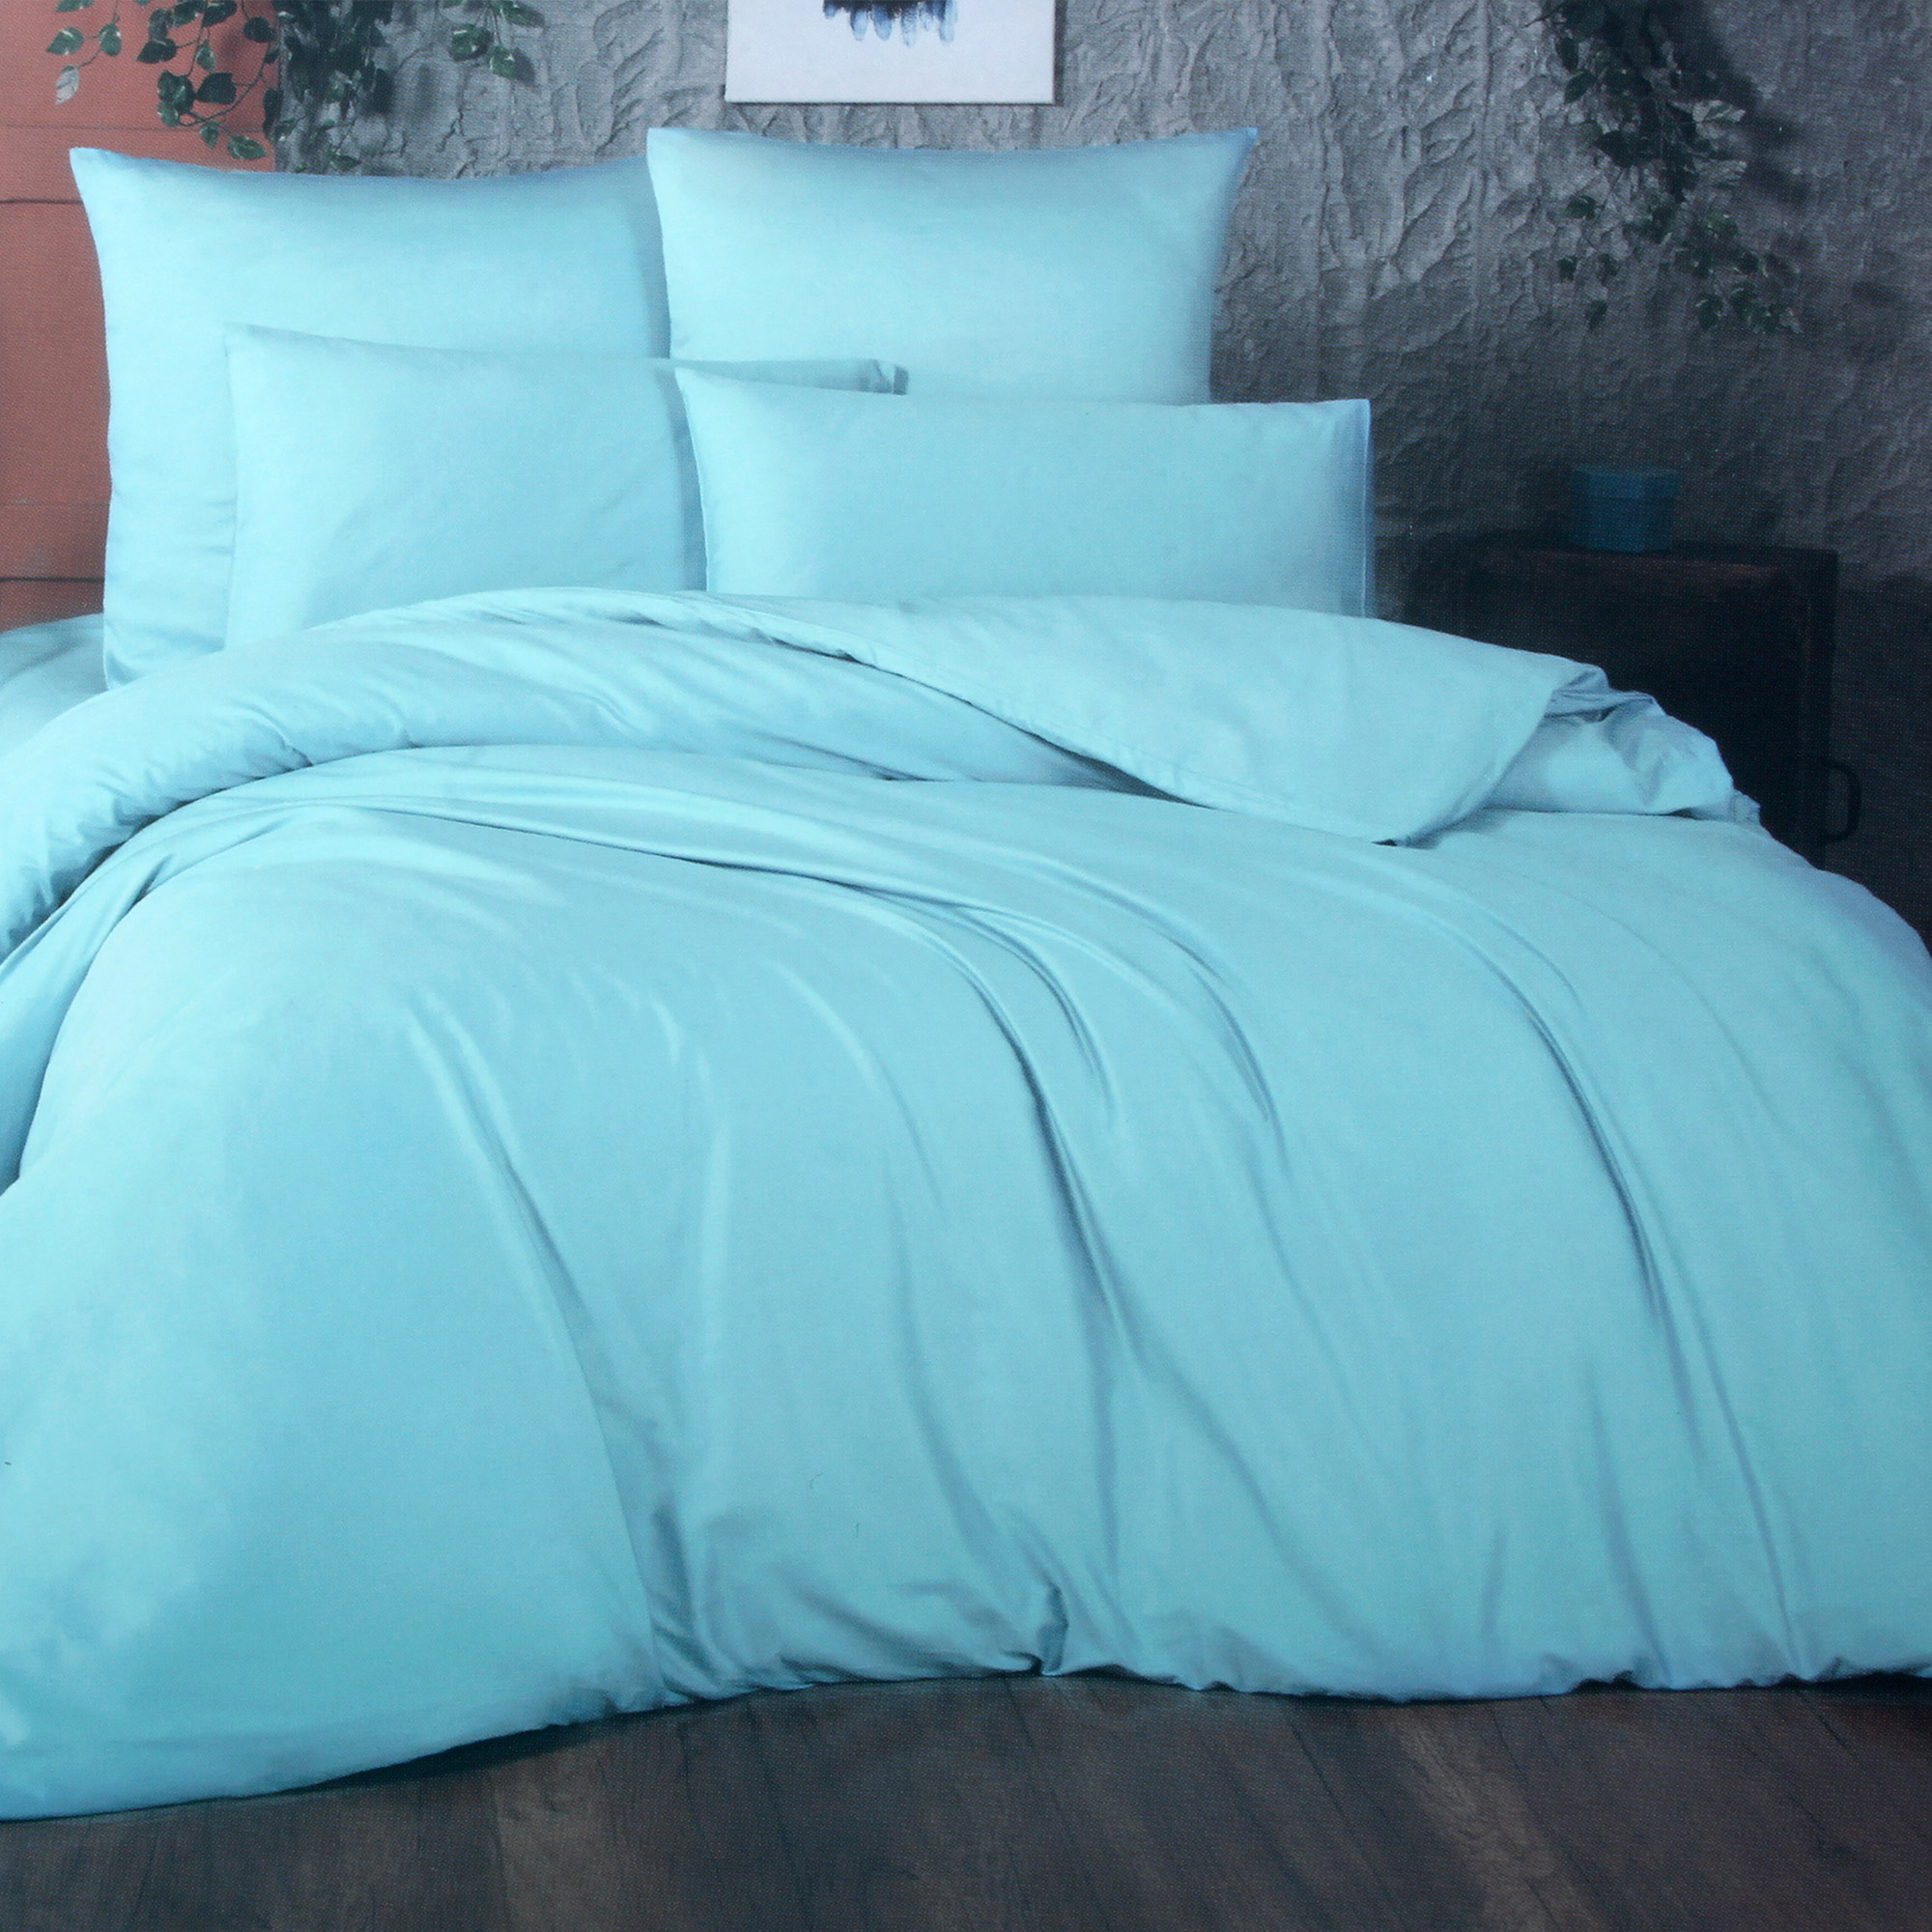 Комплект постельного белья La Besse Ранфорс синий Кинг сайз, размер Кинг сайз - фото 1